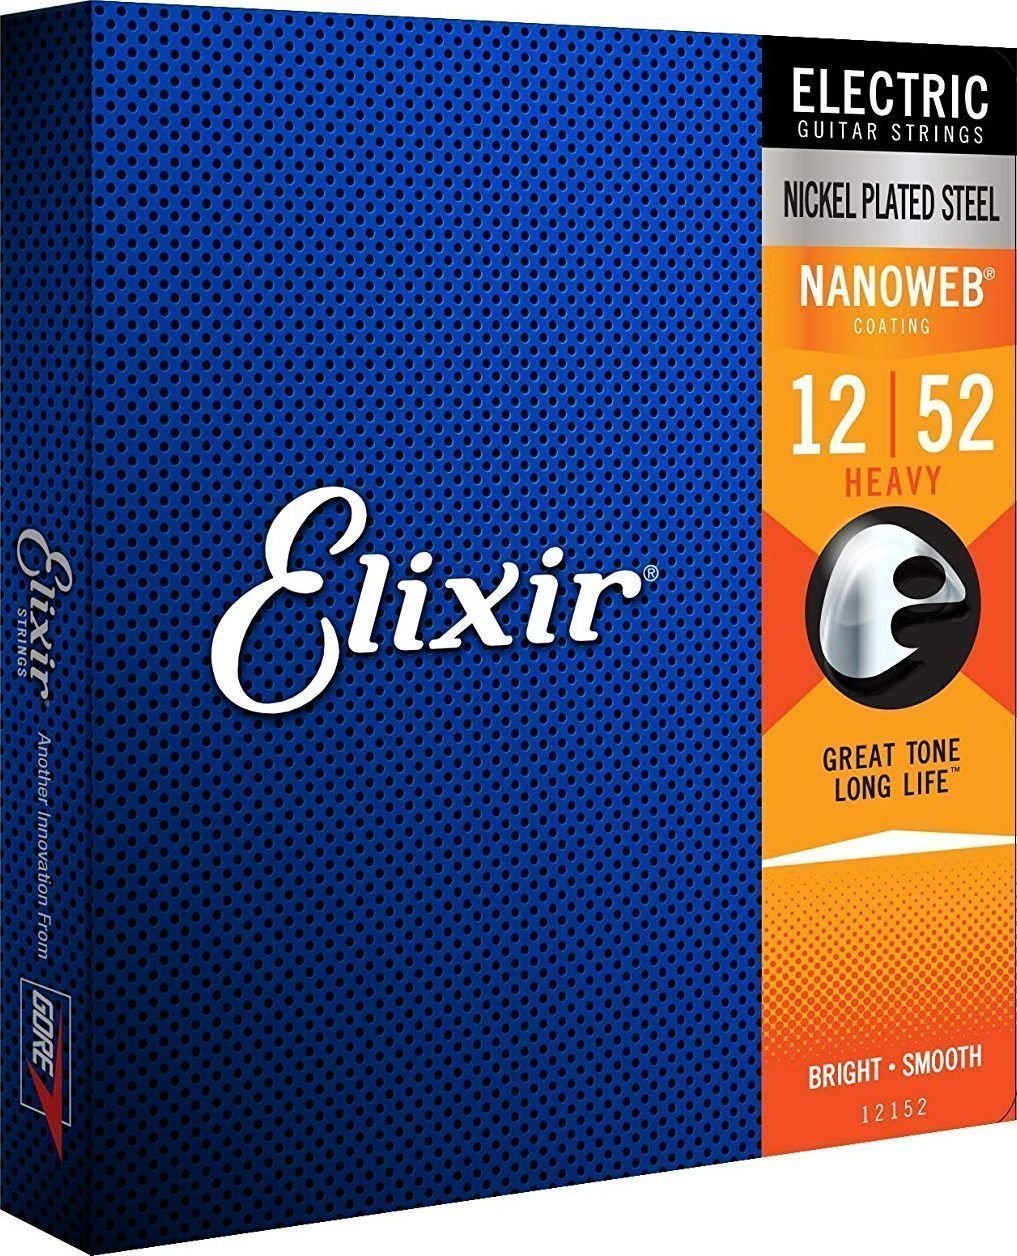 E-guitar strings Elixir 12152 Nanoweb 12-52